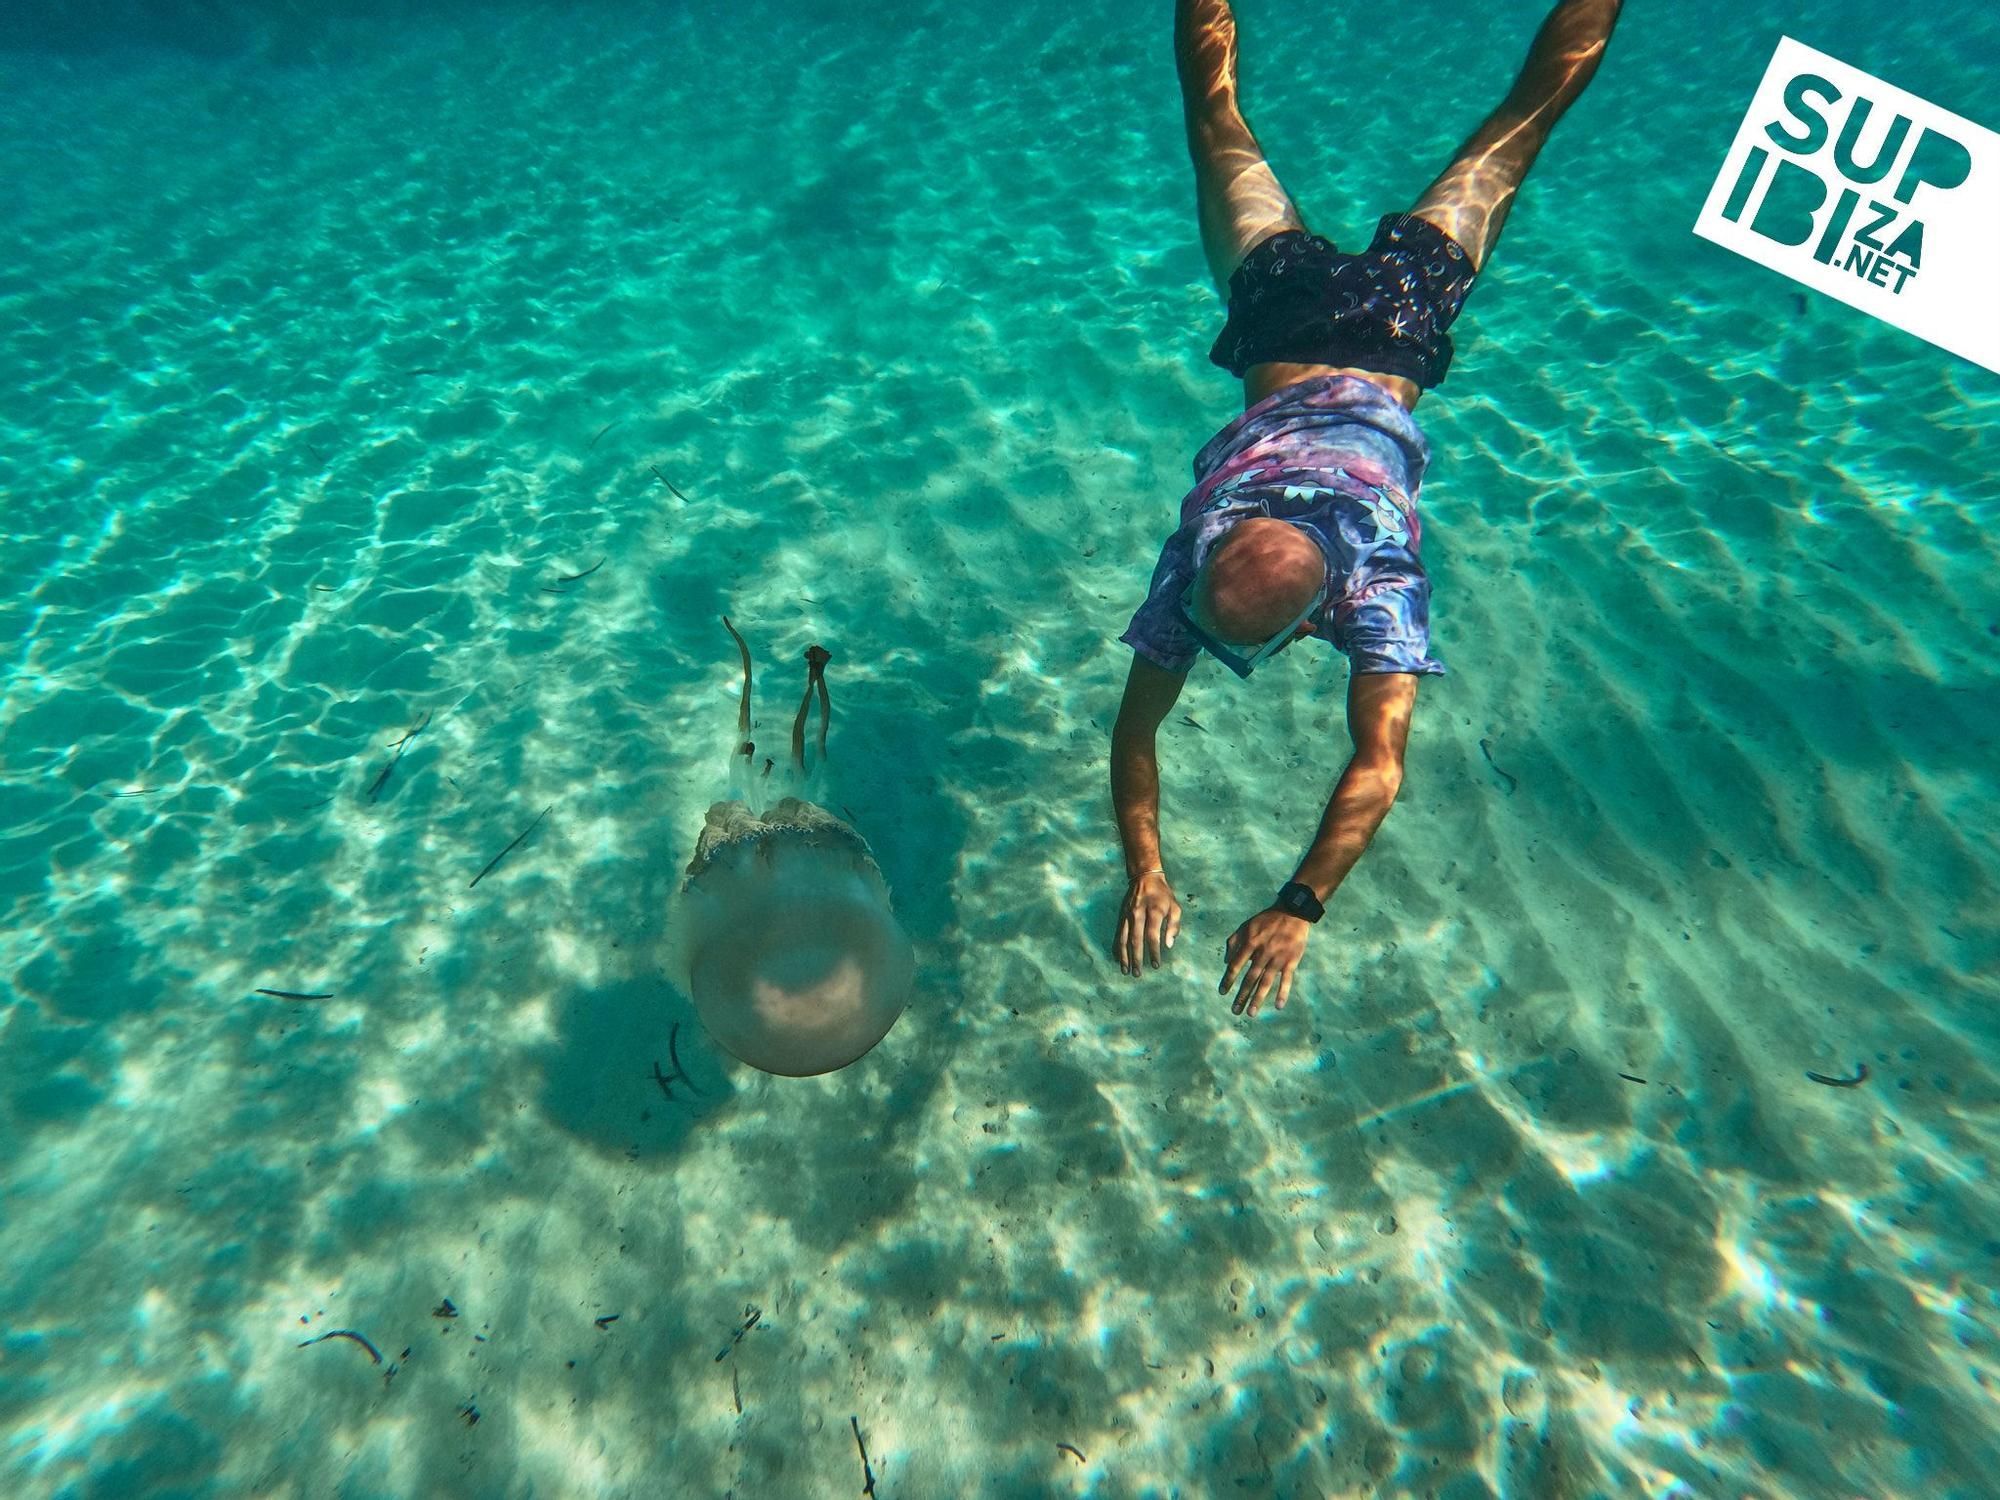 Tauchen mit Qualle - Bilder von Ibiza sorgen für Aufsehen